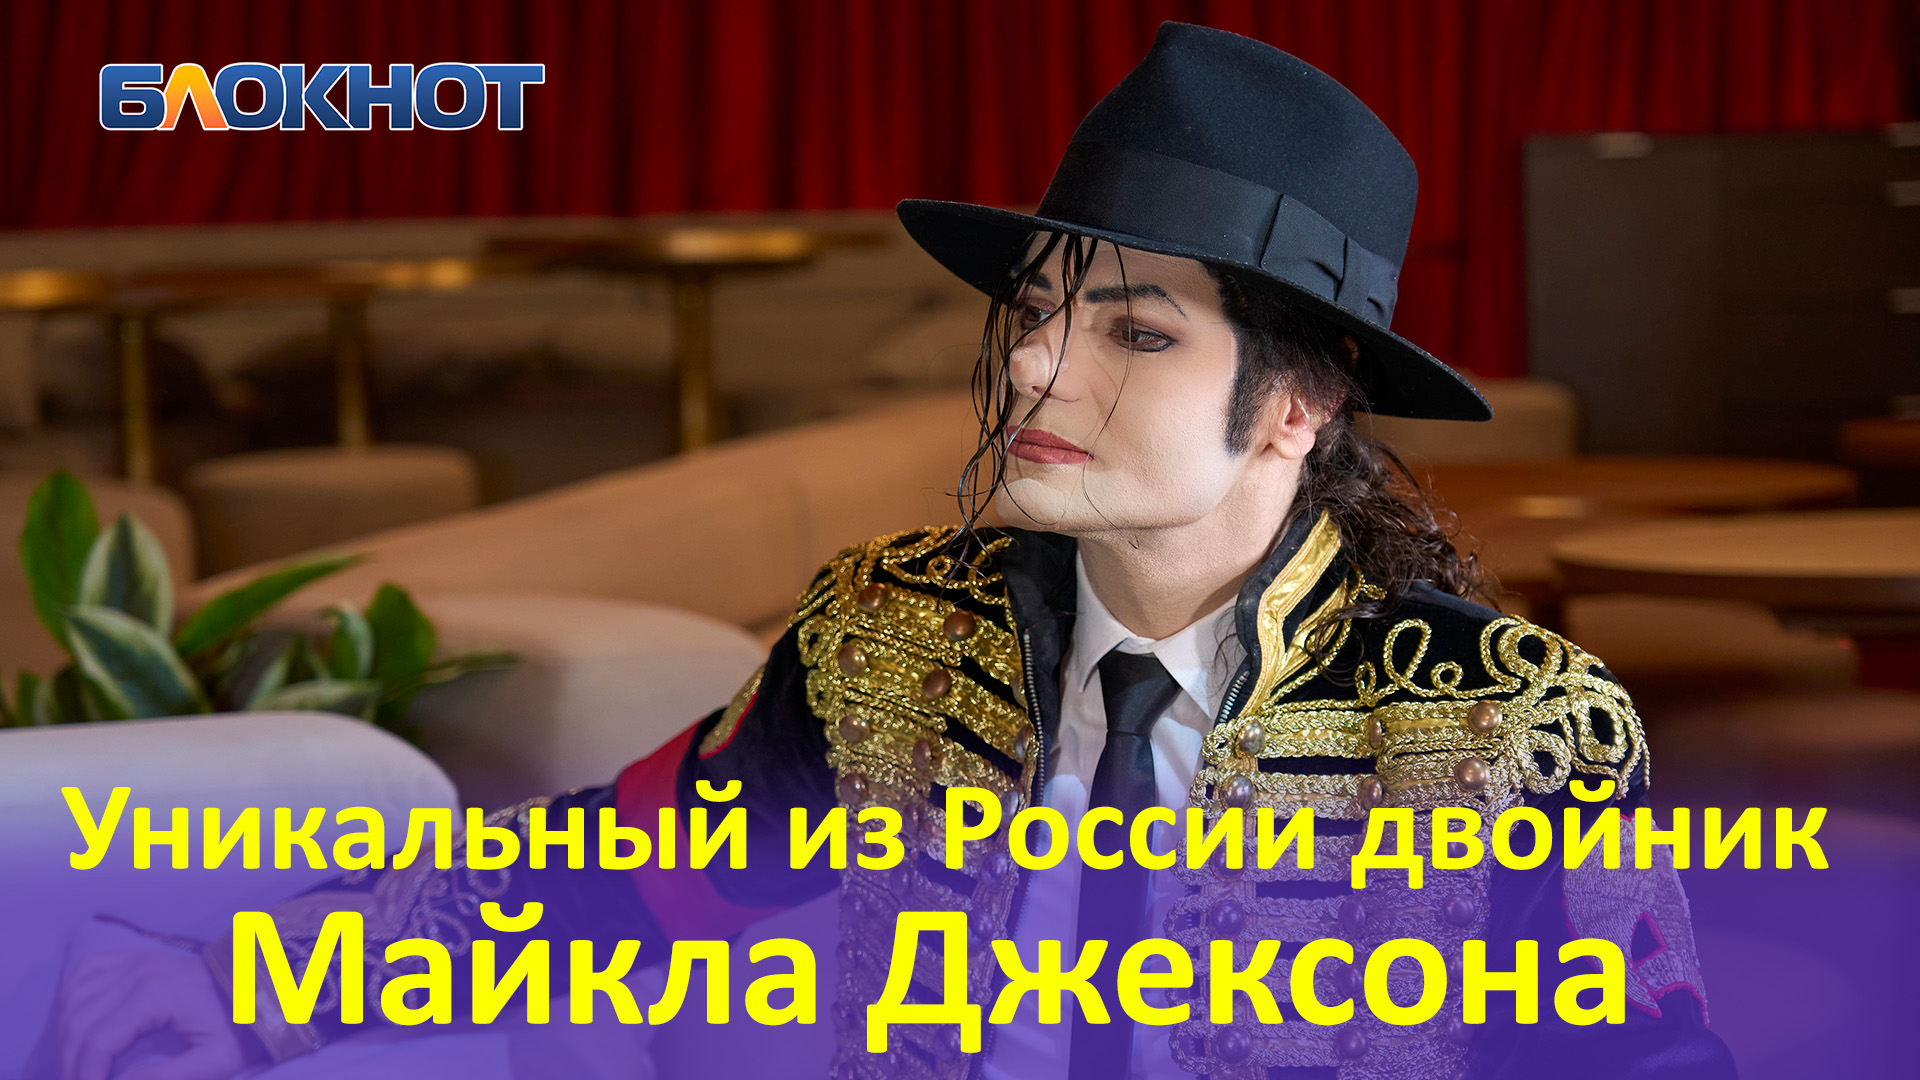 "Я люблю радовать людей": уникальный двойник Майкла Джексона дал первое интервью в России